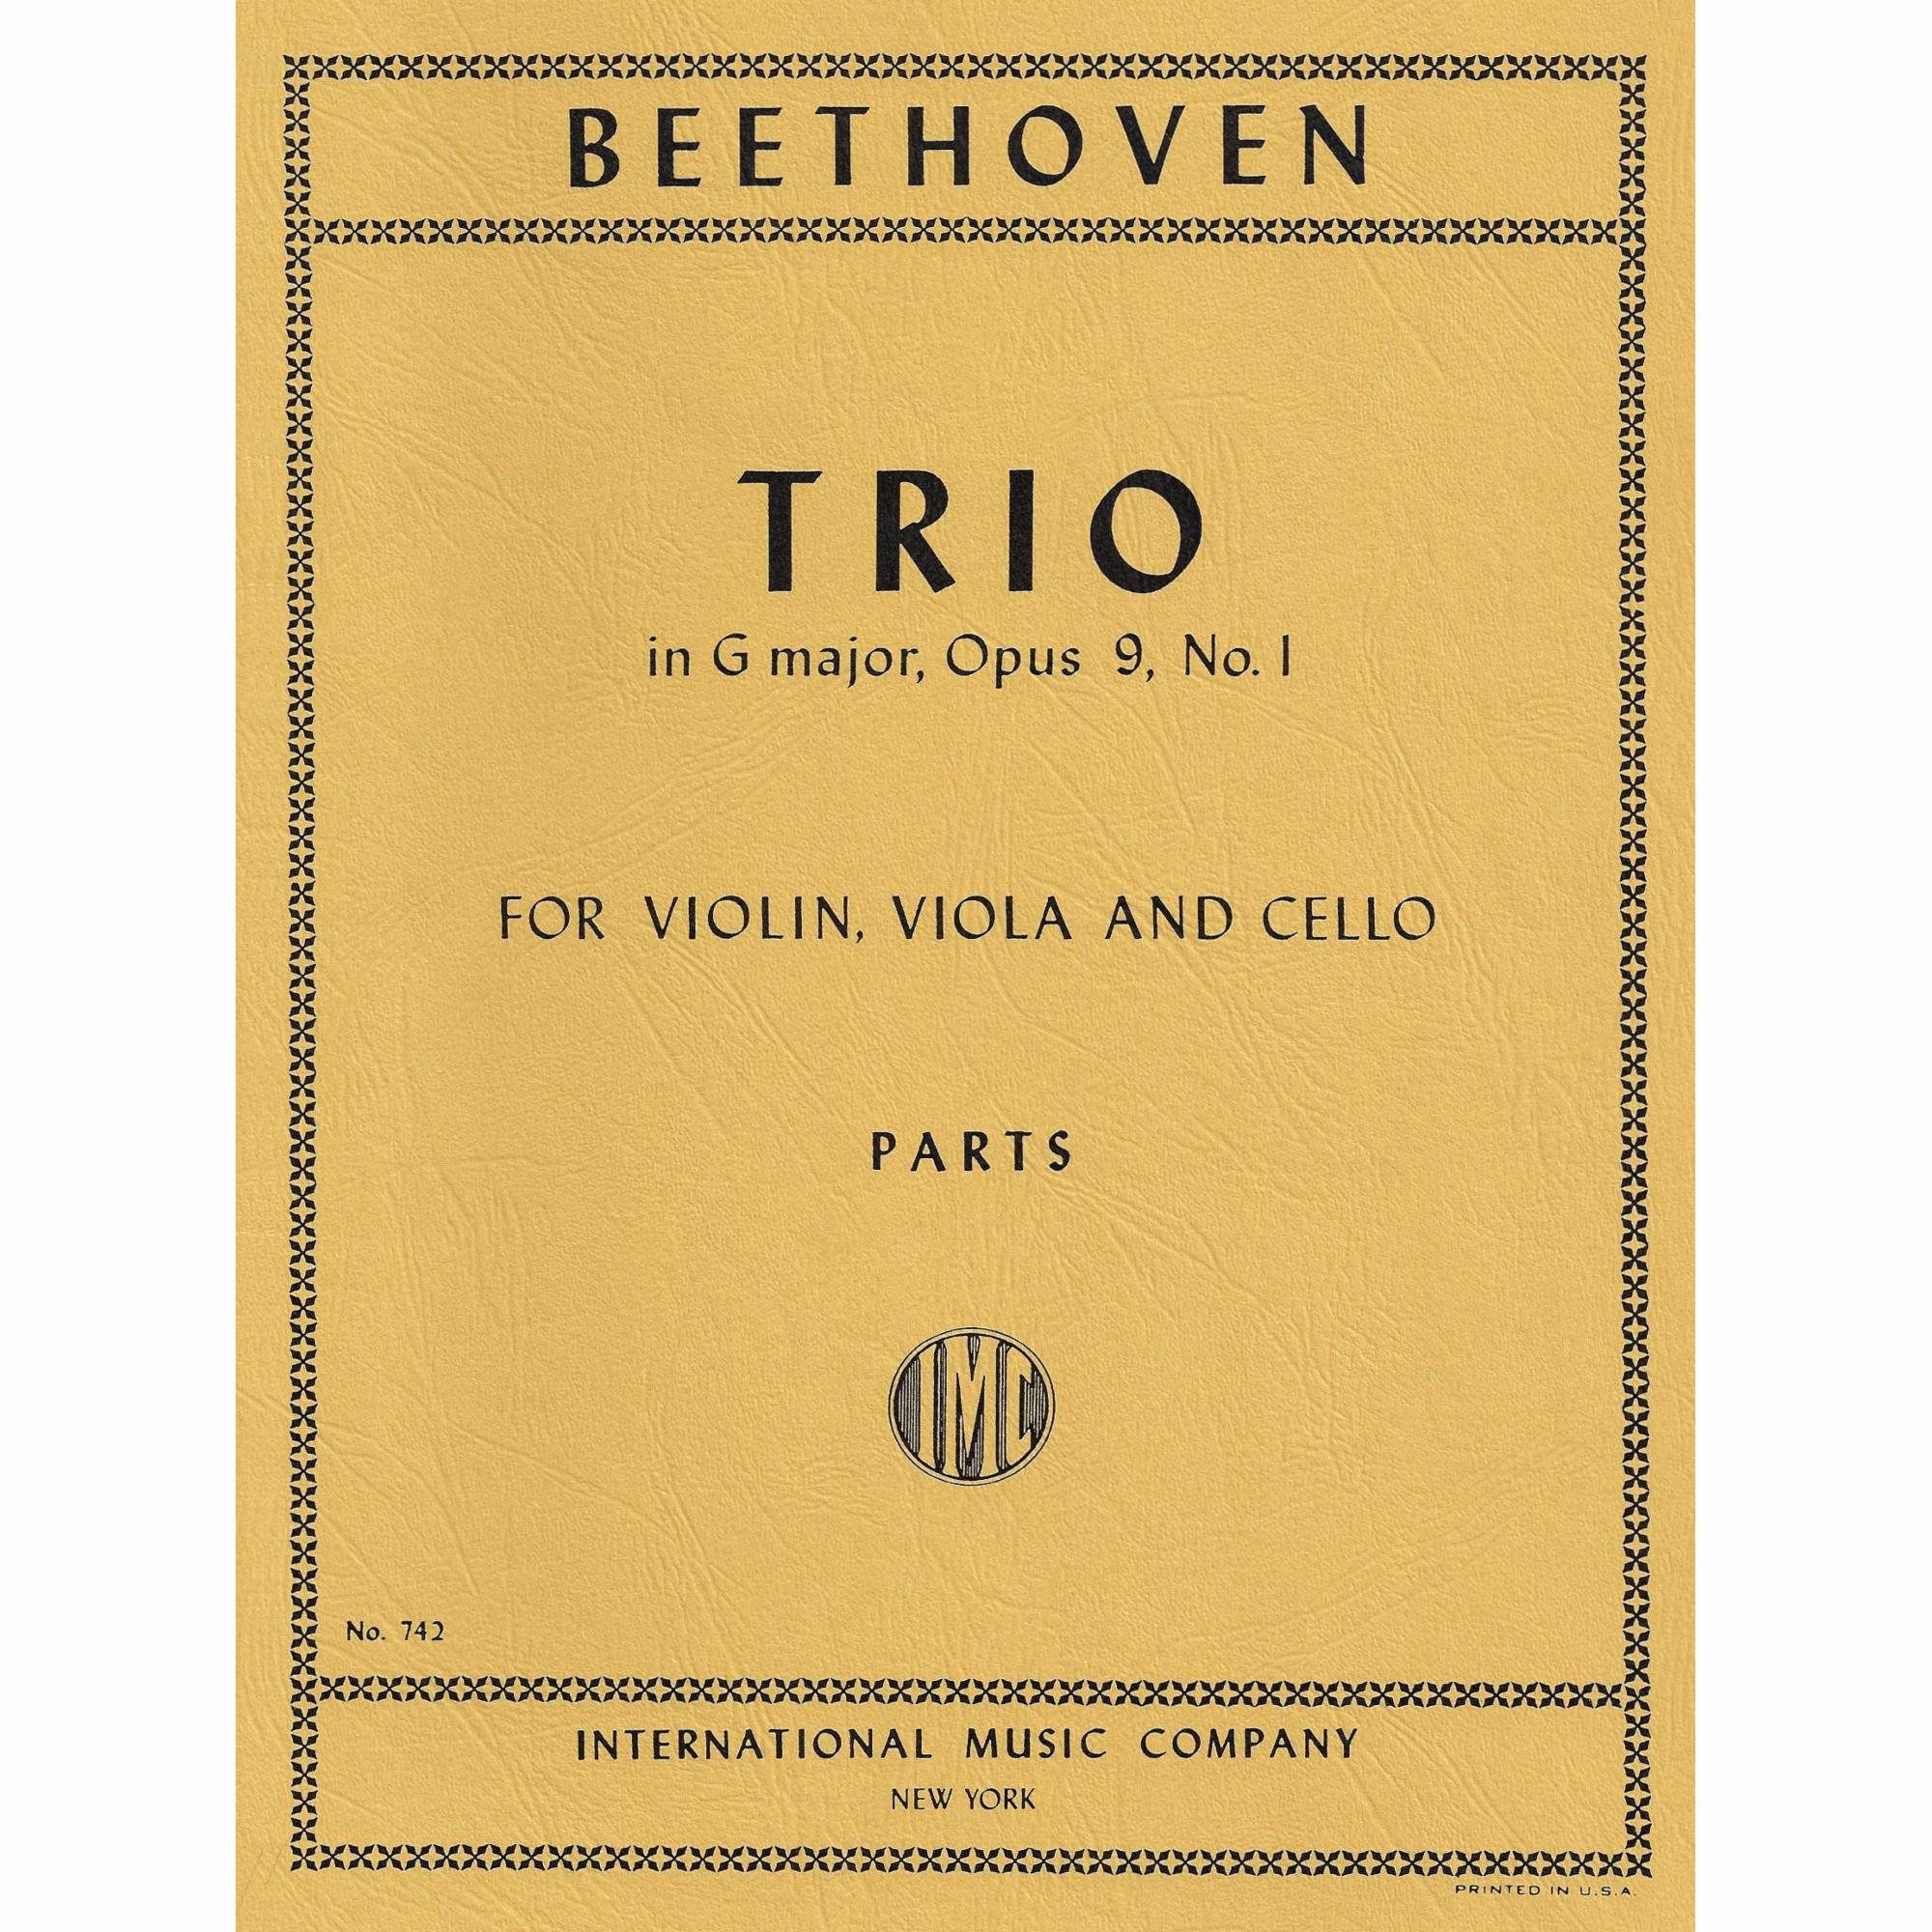 Beethoven -- Trio in G Major, Op. 9, No. 1 for Violin, Viola, and Cello